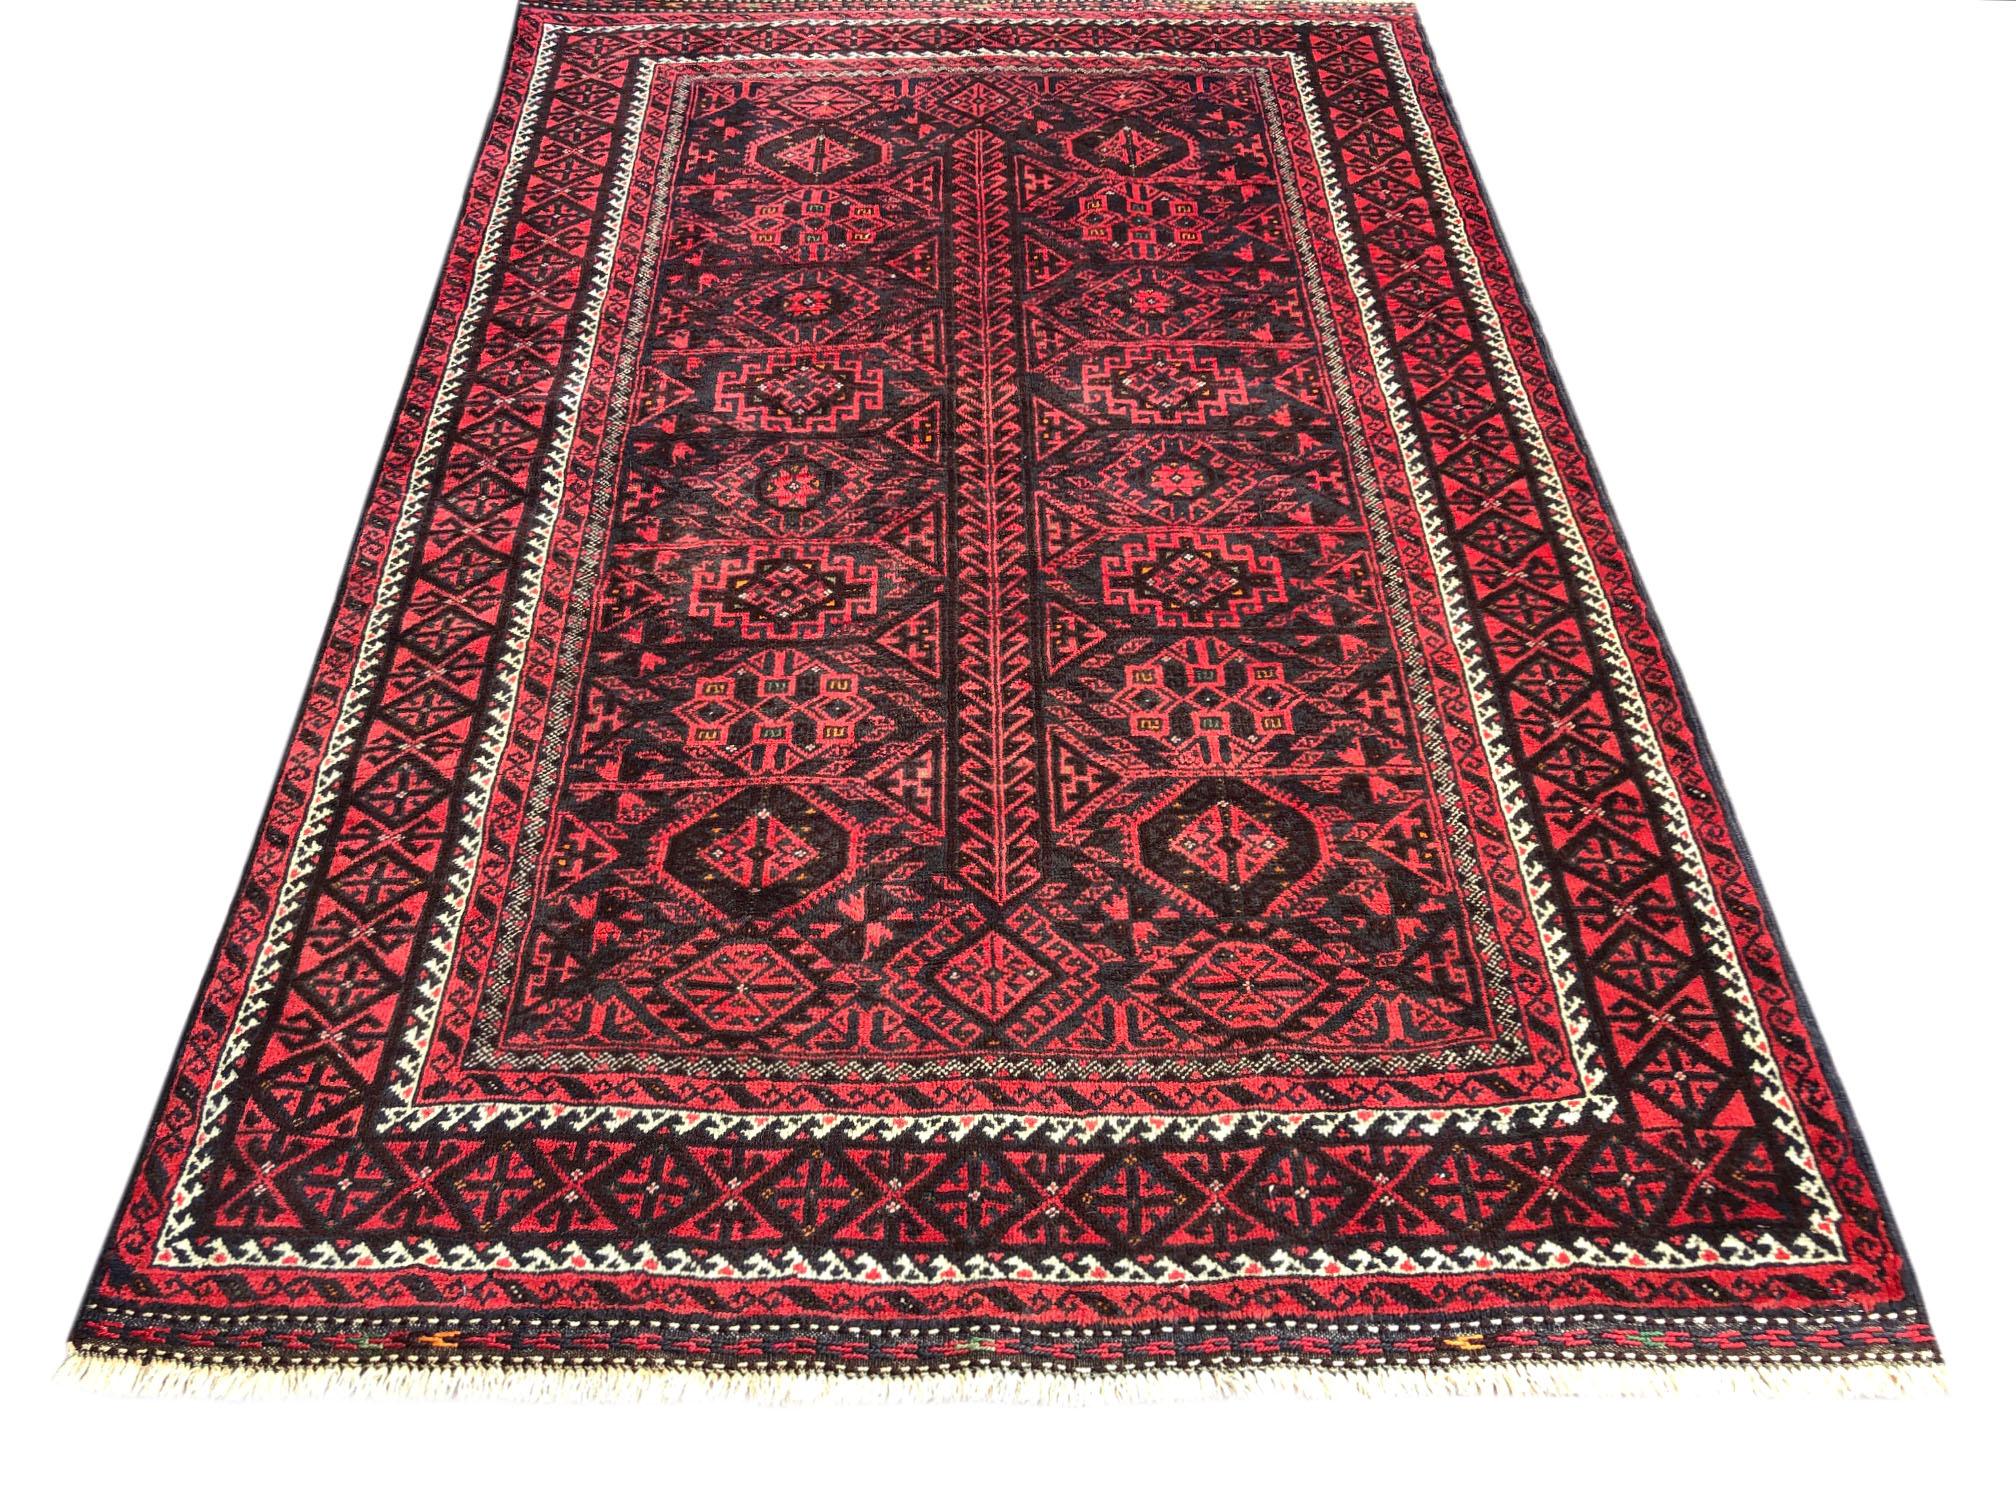 Cet authentique tapis persan Baluchi est composé de poils de laine noués à la main par les nomades de Baluchi. L'âge de ce tapis est de presque 50 ans. La taille de ce tapis est de 4 pieds 5 pouces de large par 6 pieds 3 pouces de haut. Les tapis